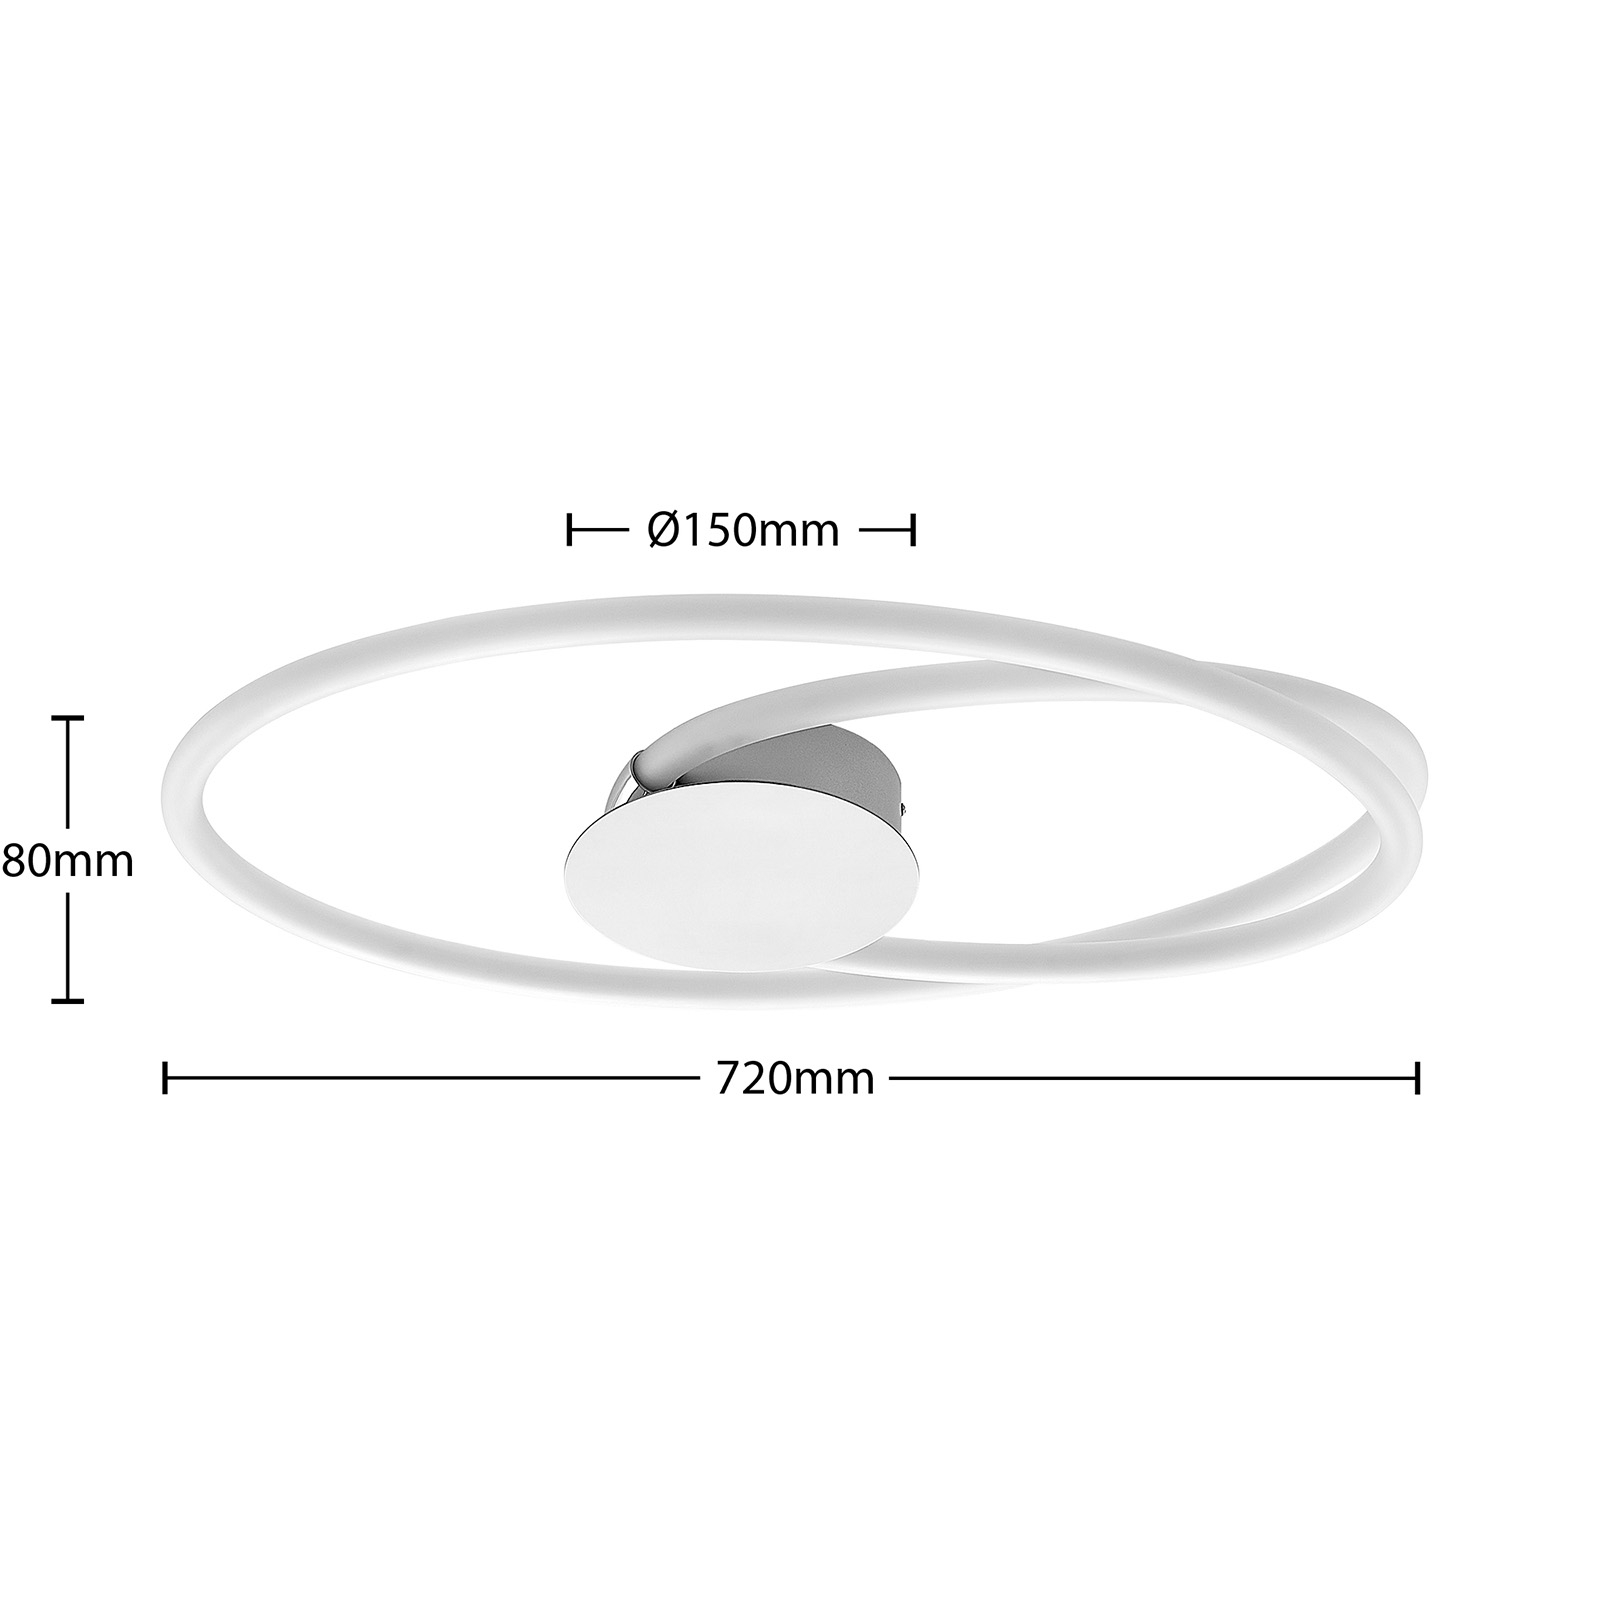 Lucande Ovala plafonnier LED, 72 cm